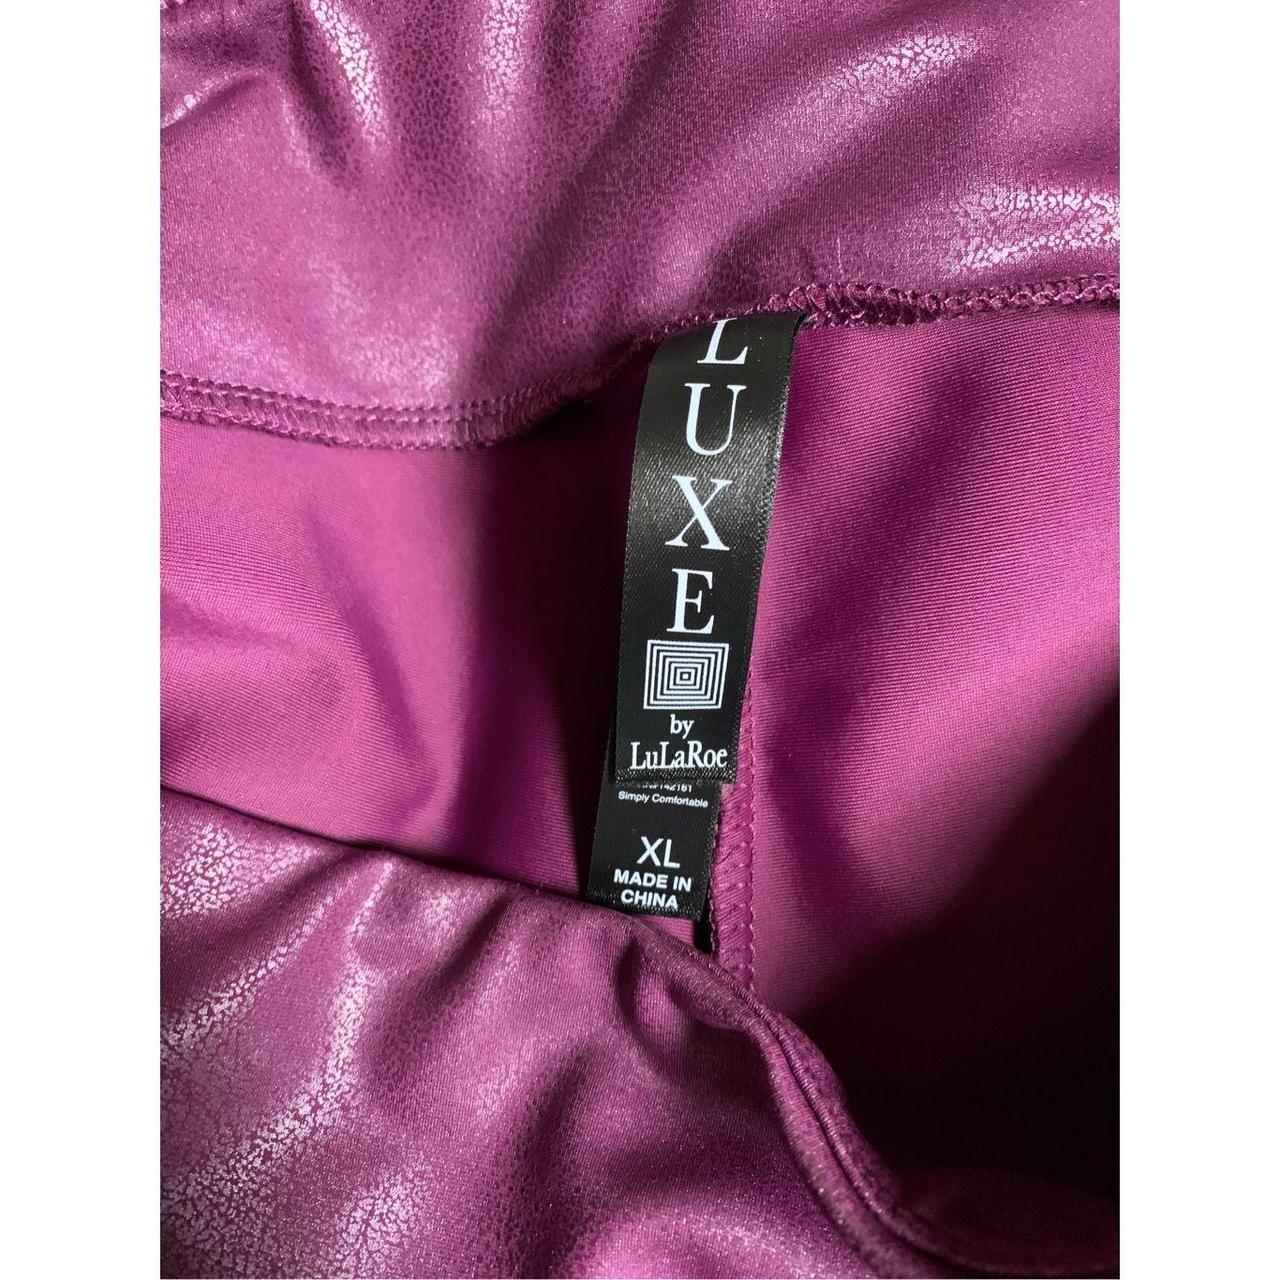 LuLaRoe Luxe. Faux leather leggings. A beautiful - Depop